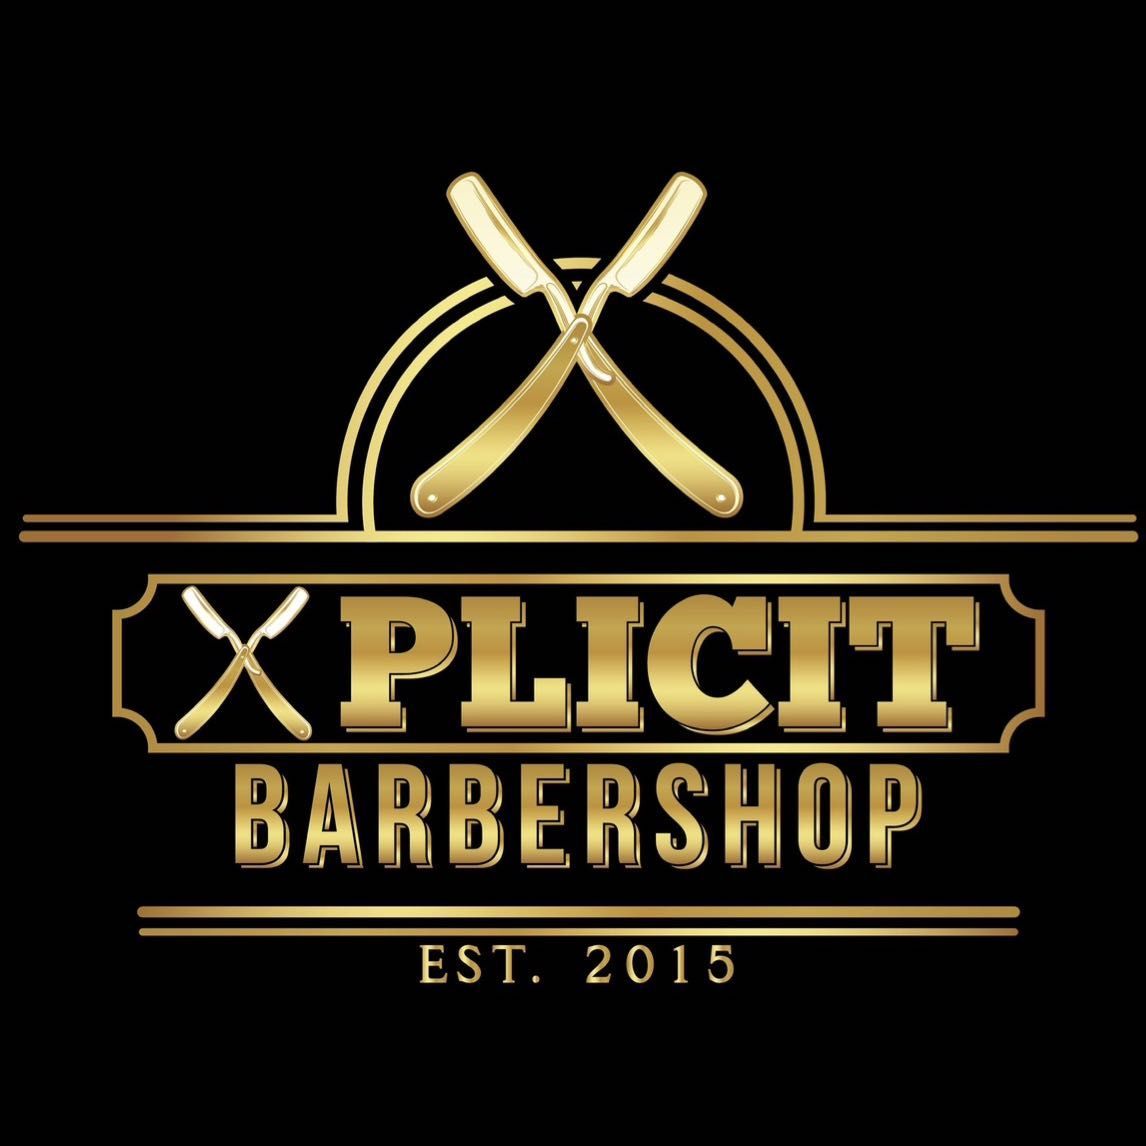 Xplicit Barbershop, 14068 Vanowen St, Van Nuys, Van Nuys 91405